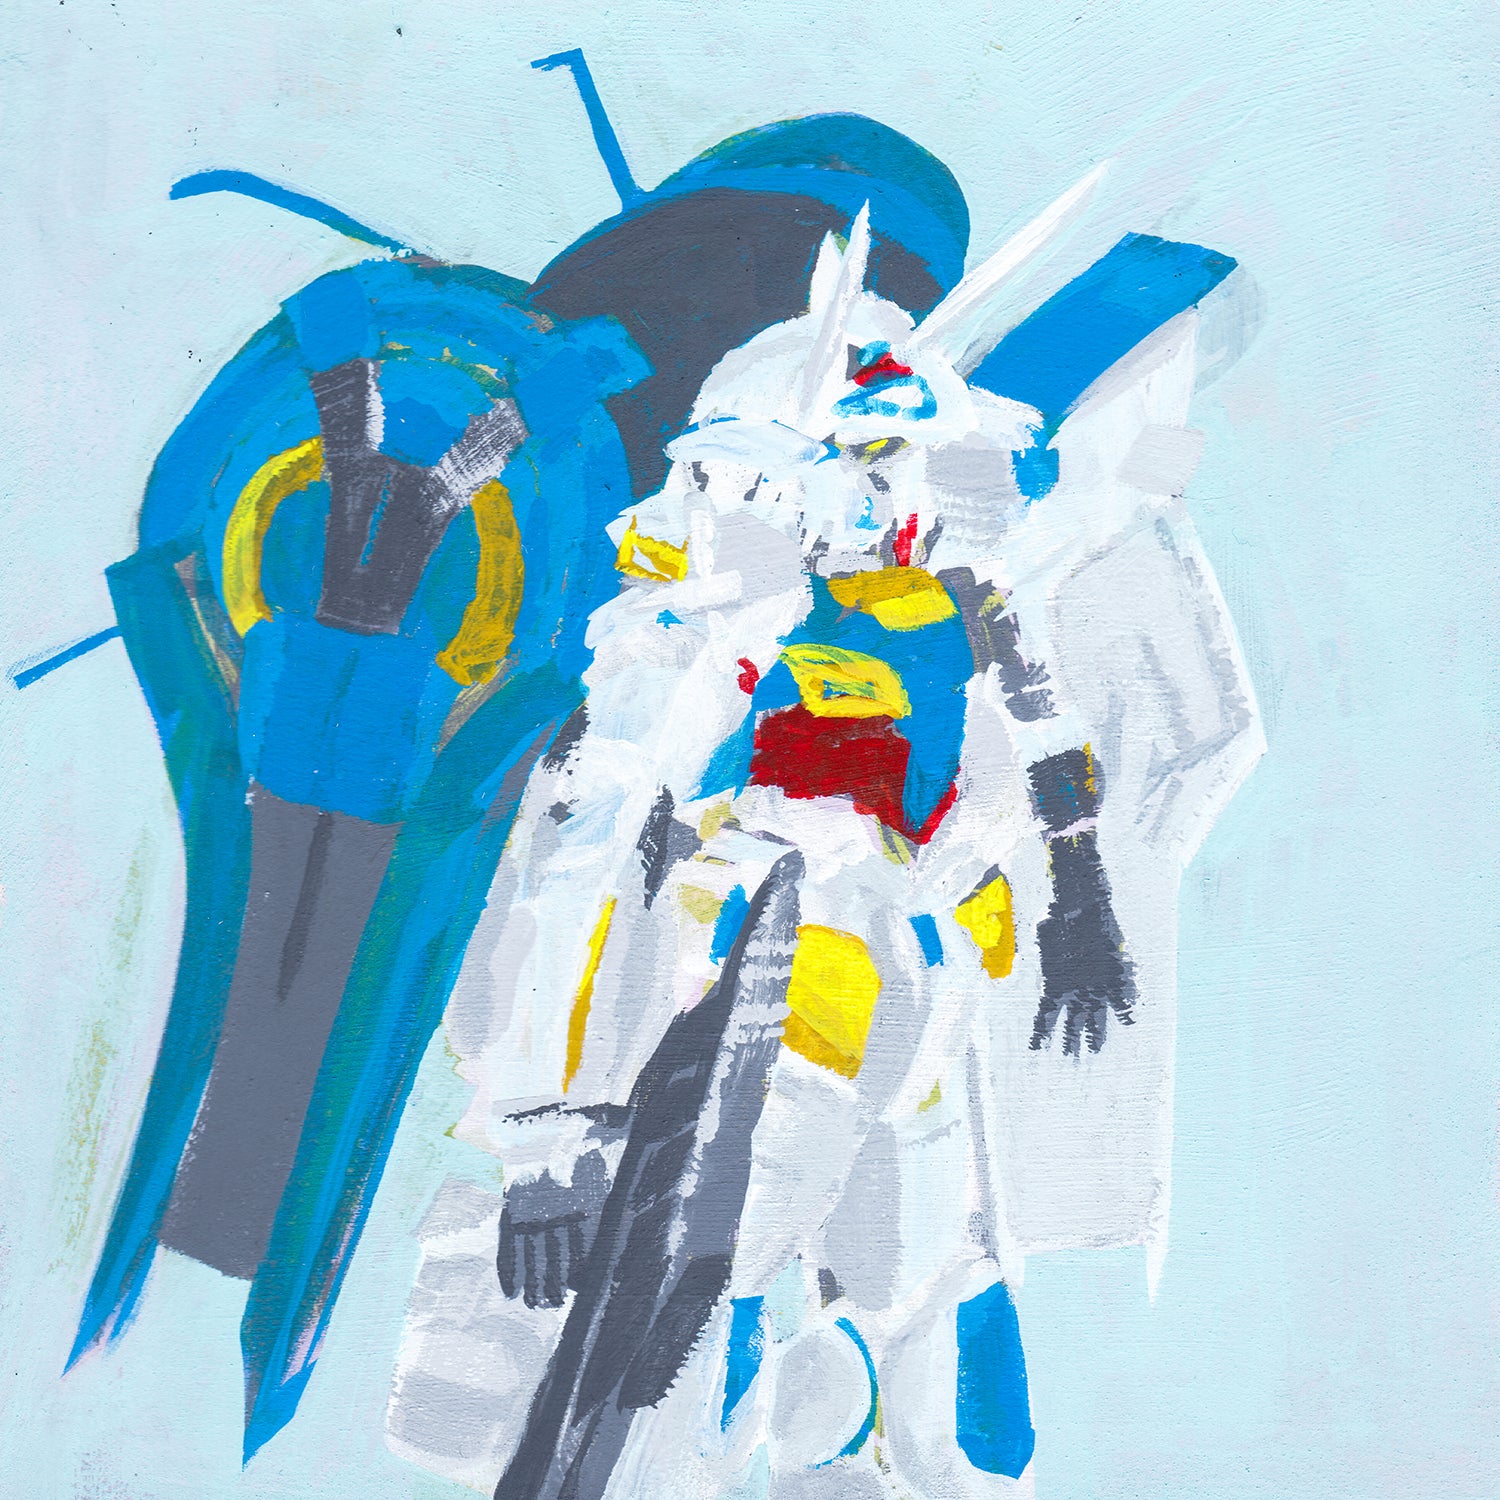 YG-111 Gundam G-Self